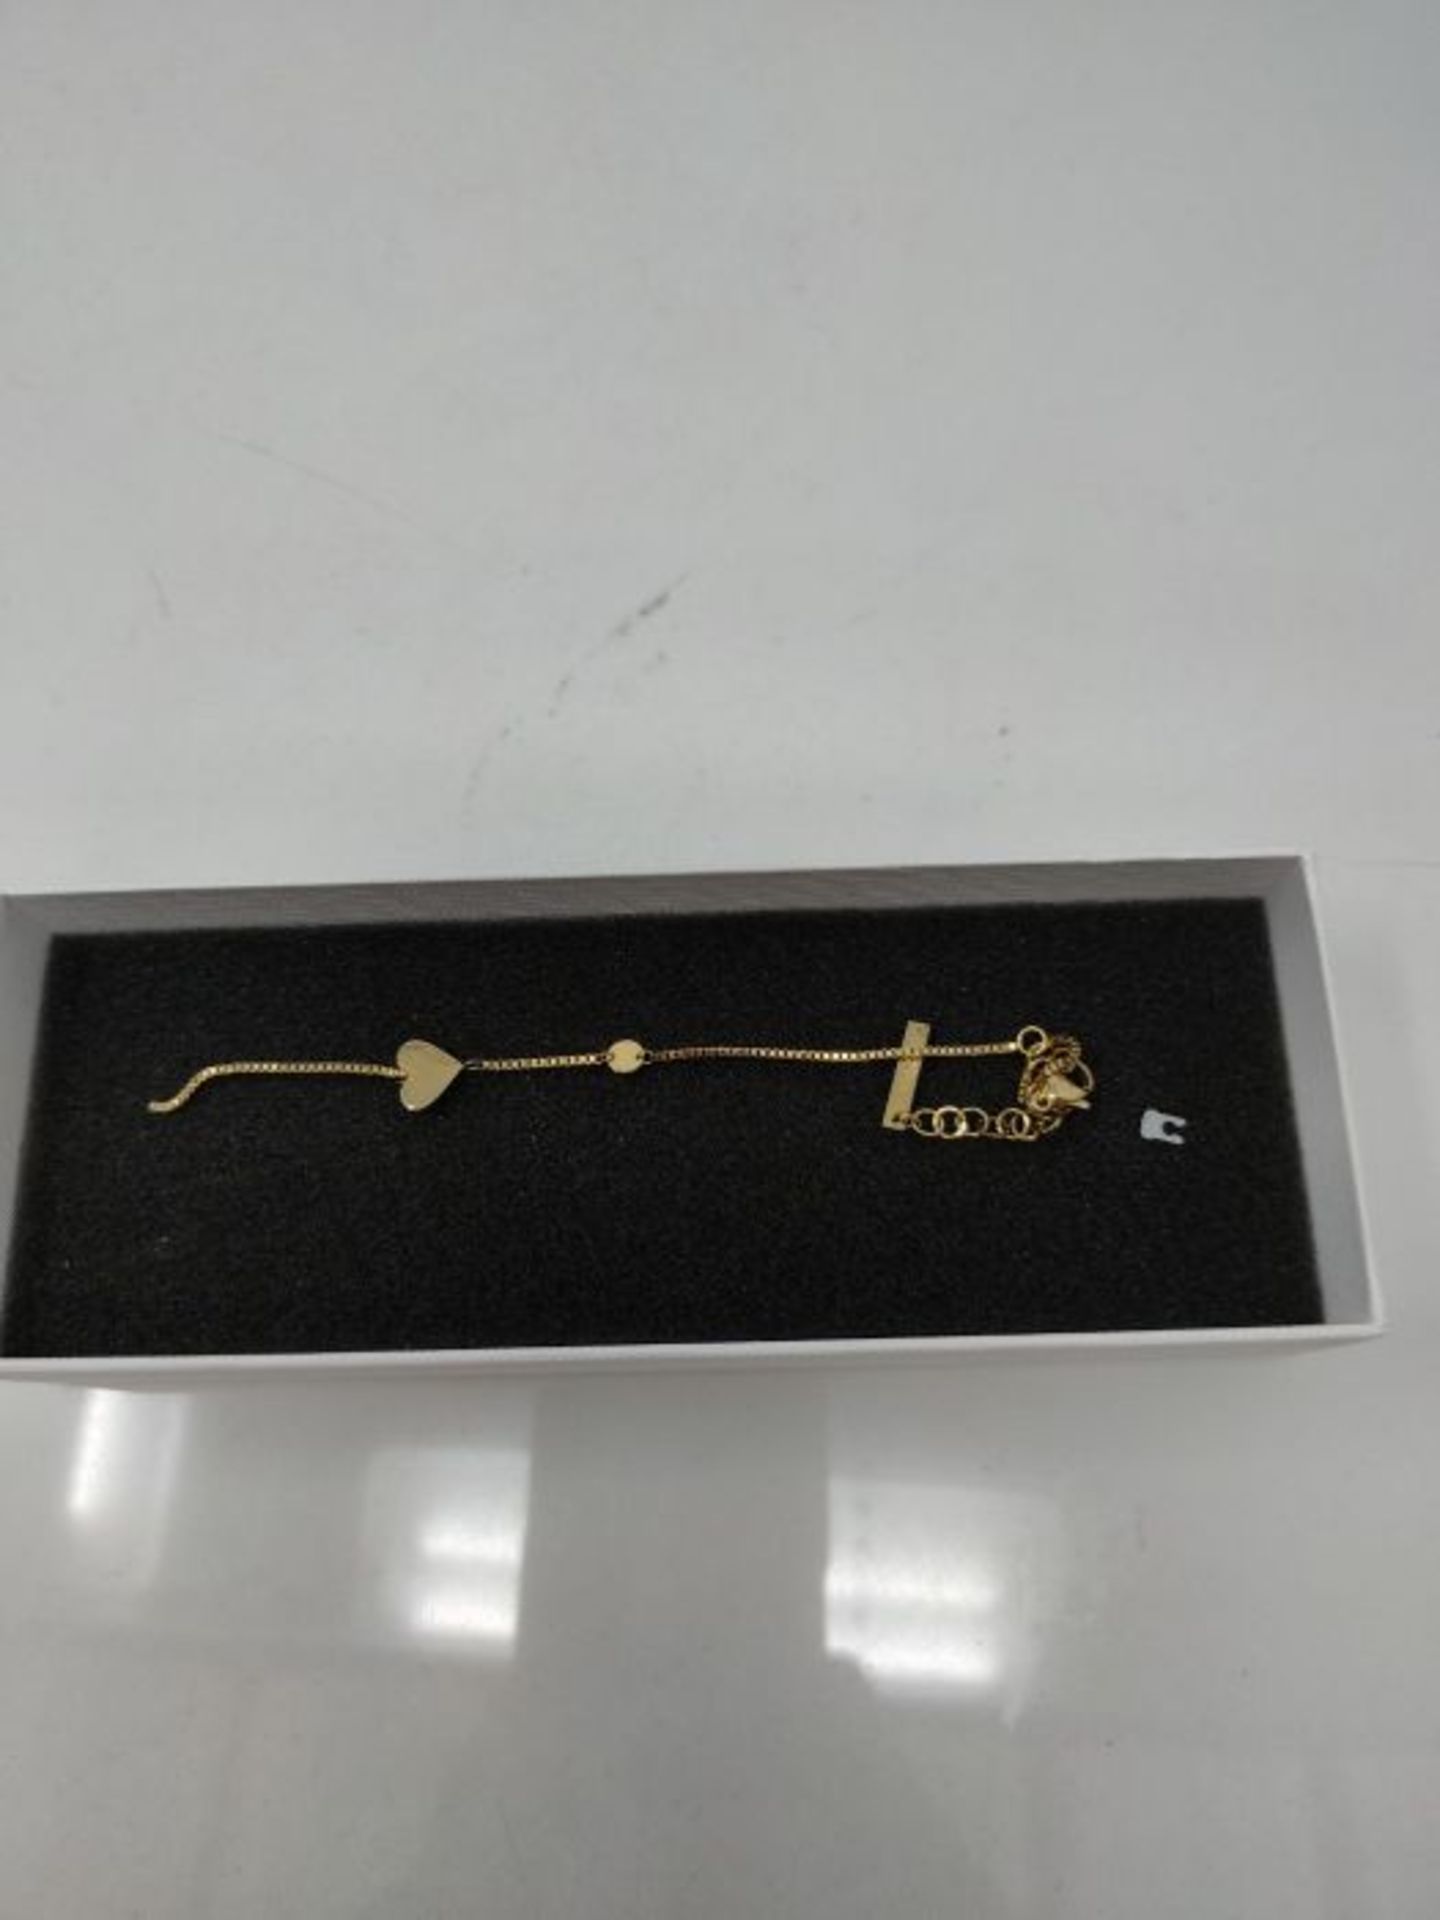 [CRACKED] Liebeskind LJ-0510-B-20 Damen Armband Herz Edelstahl Gold 20 cm - Image 3 of 3